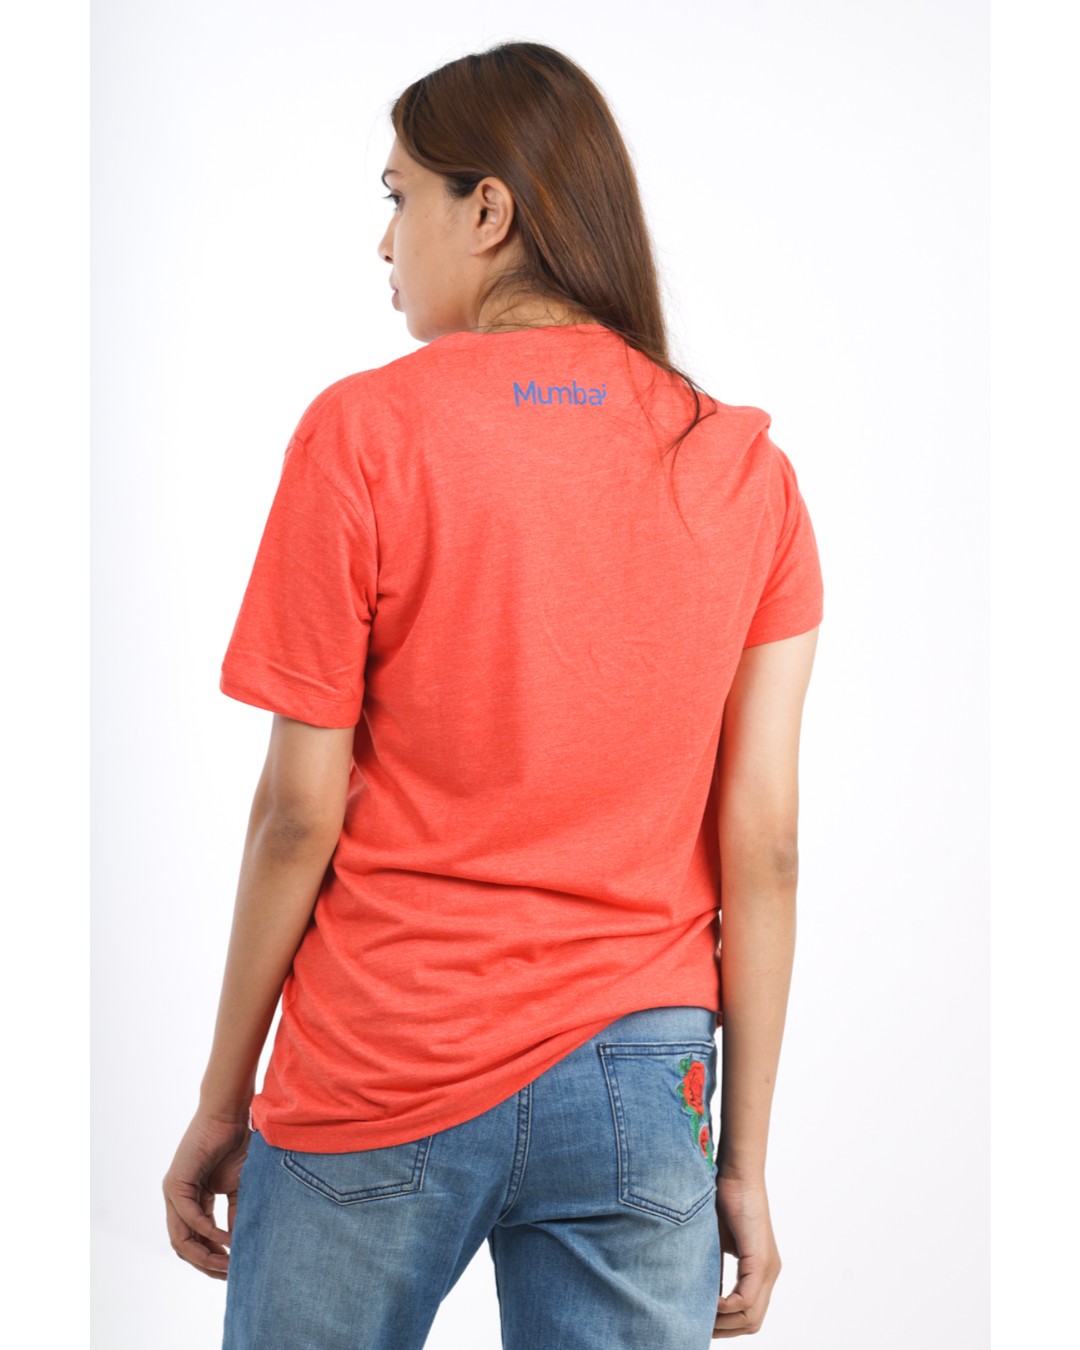 Shop Women's Mumbai Meri Jaan T-shirt in Red-Back